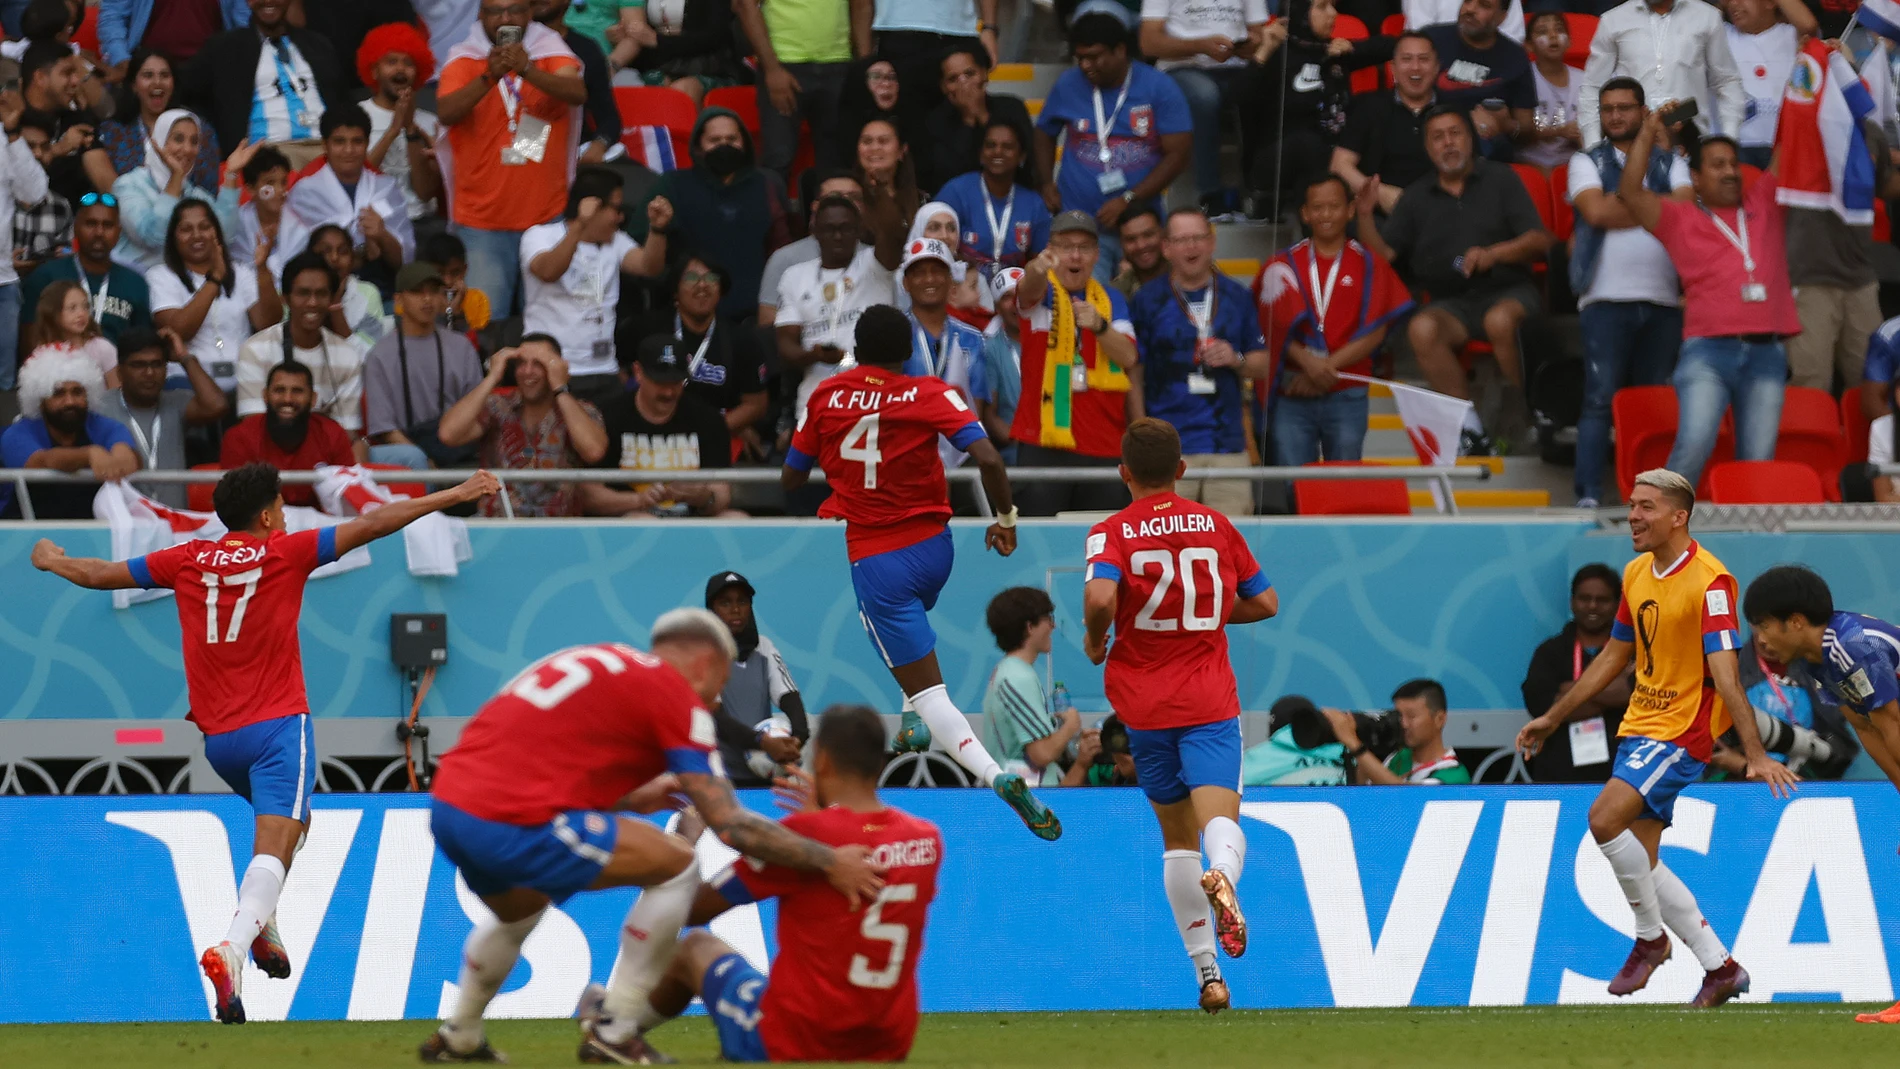 Los jugadores de Costa Rica celebran el gol de la victoria de Fuller en el 81